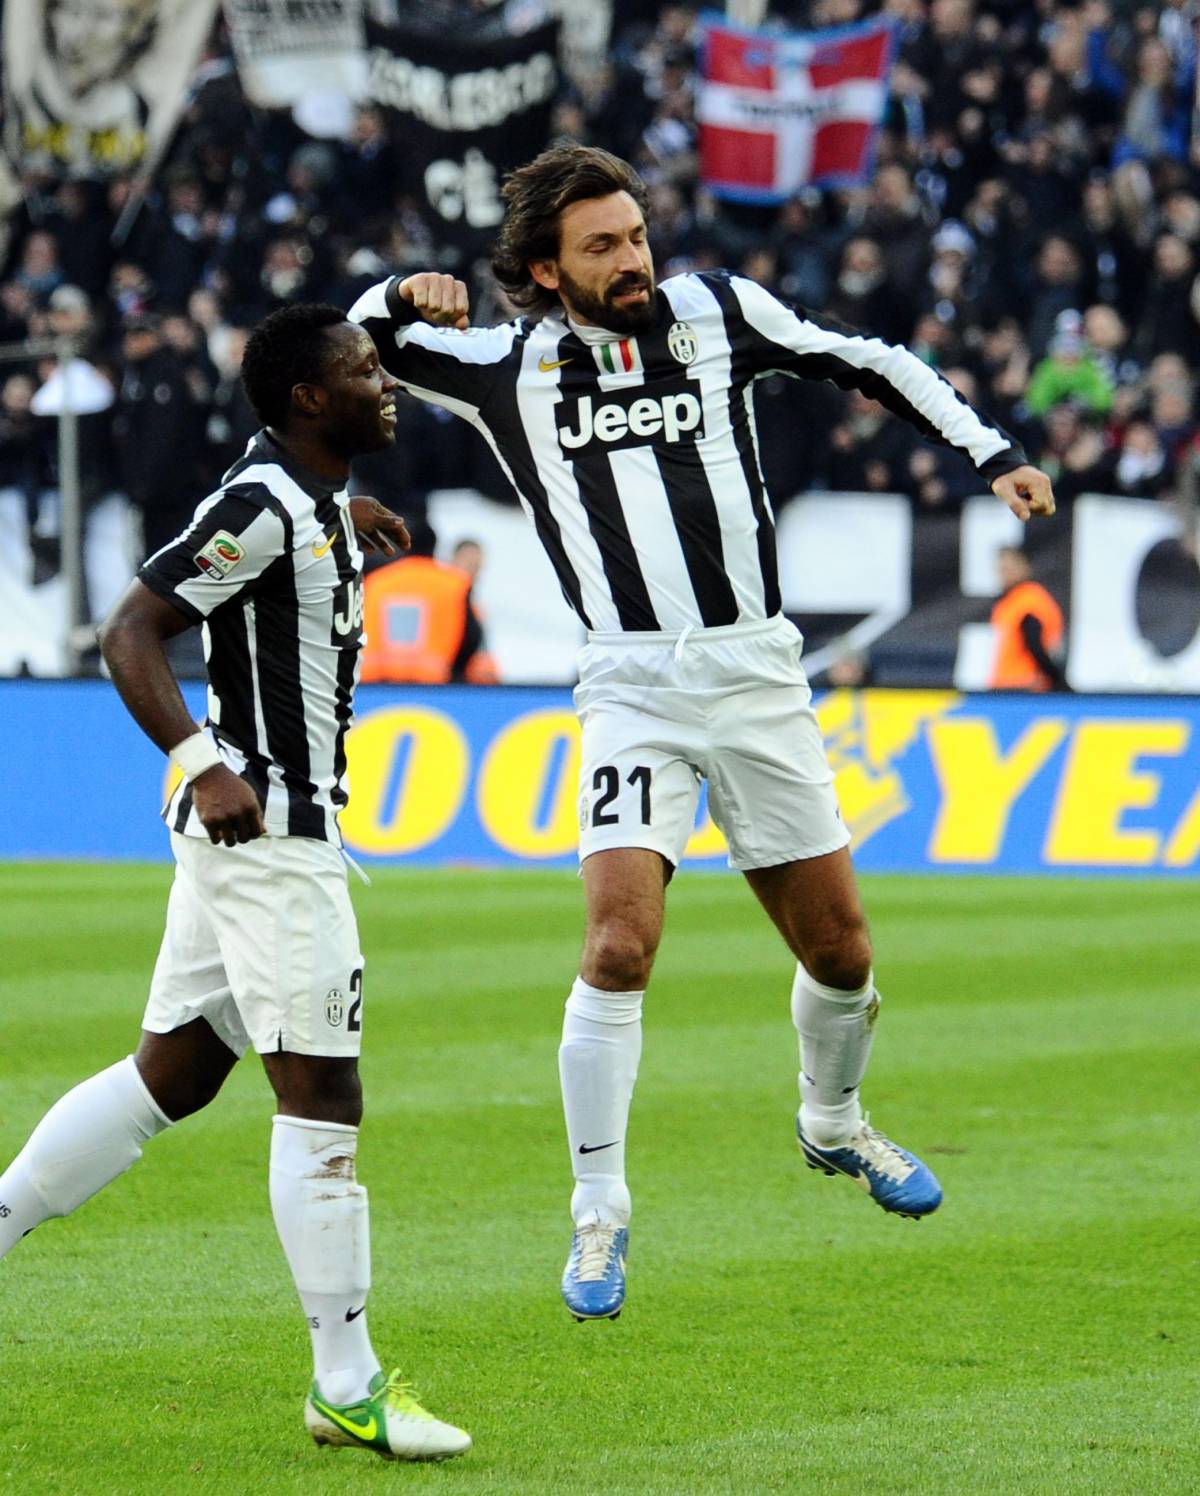 Esultanza di Andrea Pirlo della Juventus dopo il goal del 2-0 su punizione all'Atalanta